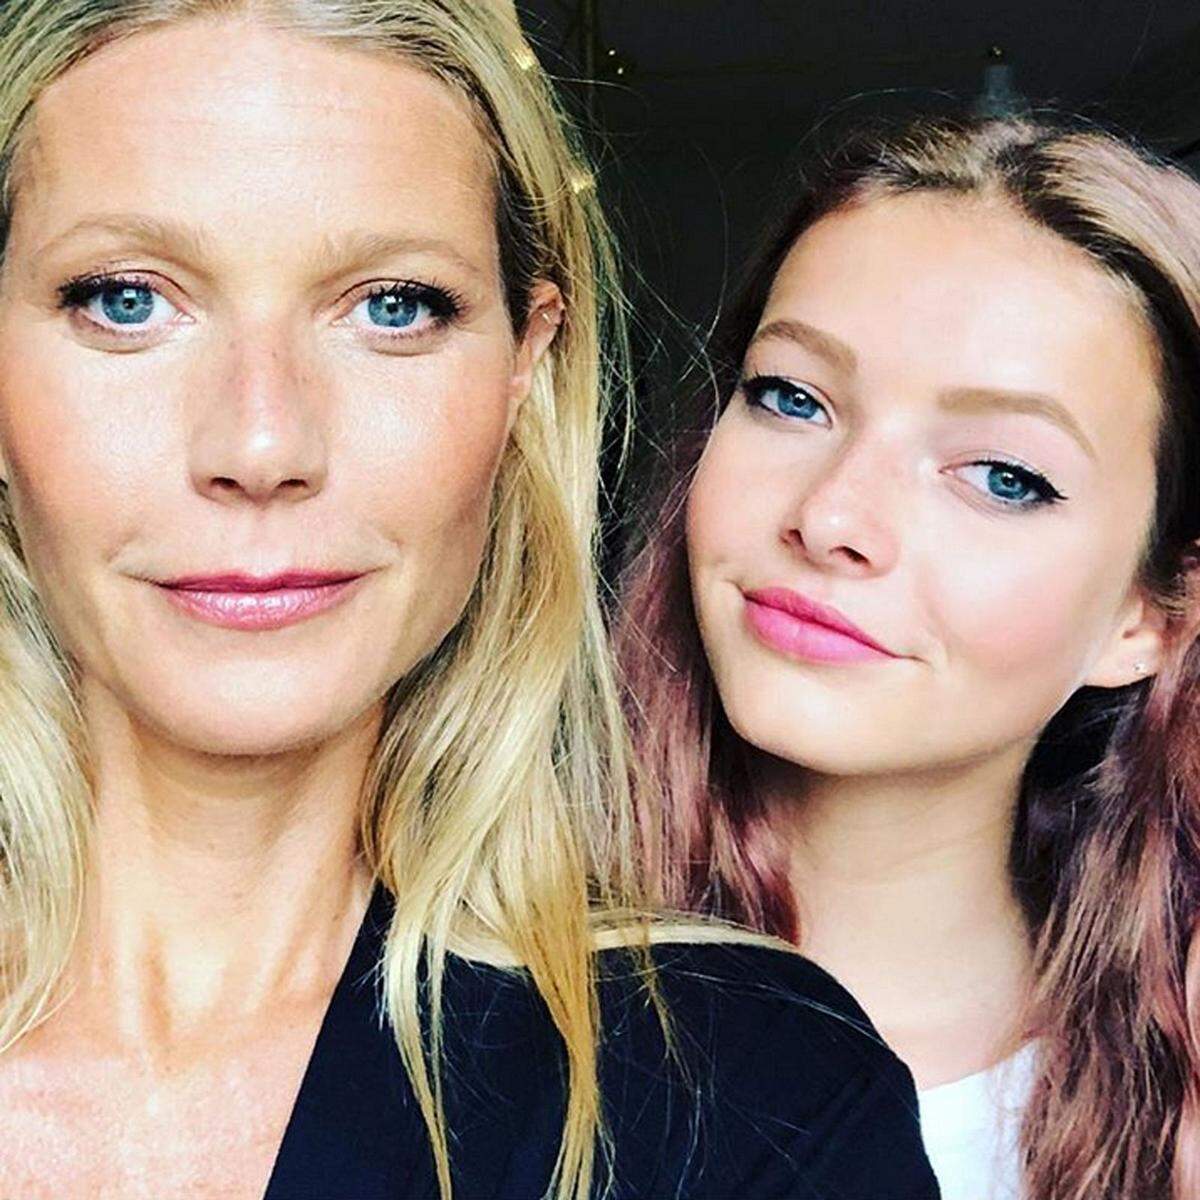 Der Apfel fällt nicht weit vom Baum. Apple Martin, die 14-jährige Tochter von Gwyneth Paltrow, schaut der Schauspielerin wie aus dem Gesicht geschnitten aus. Das beweist ein Selfie, das Paltrow auf Instagram teilte.  